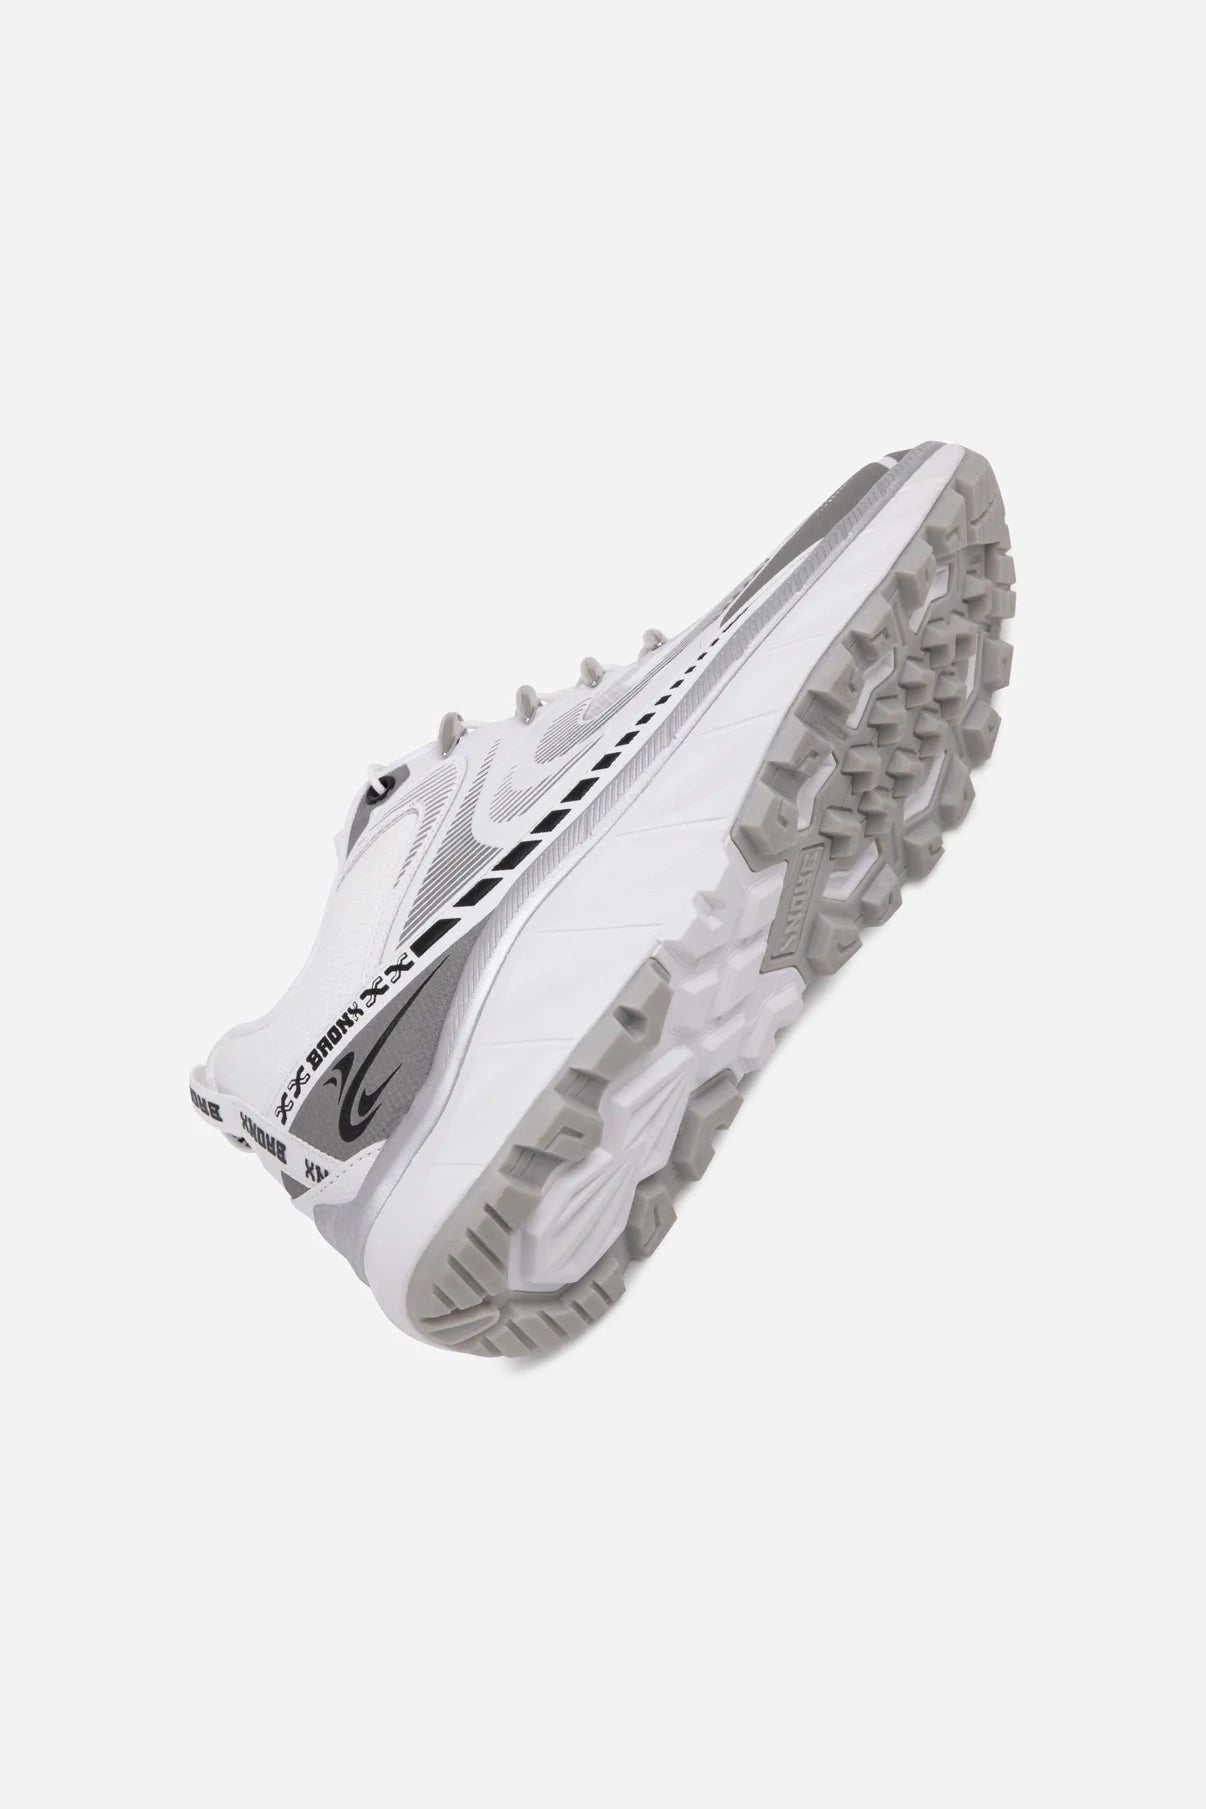 Track-err sneaker - white/silver